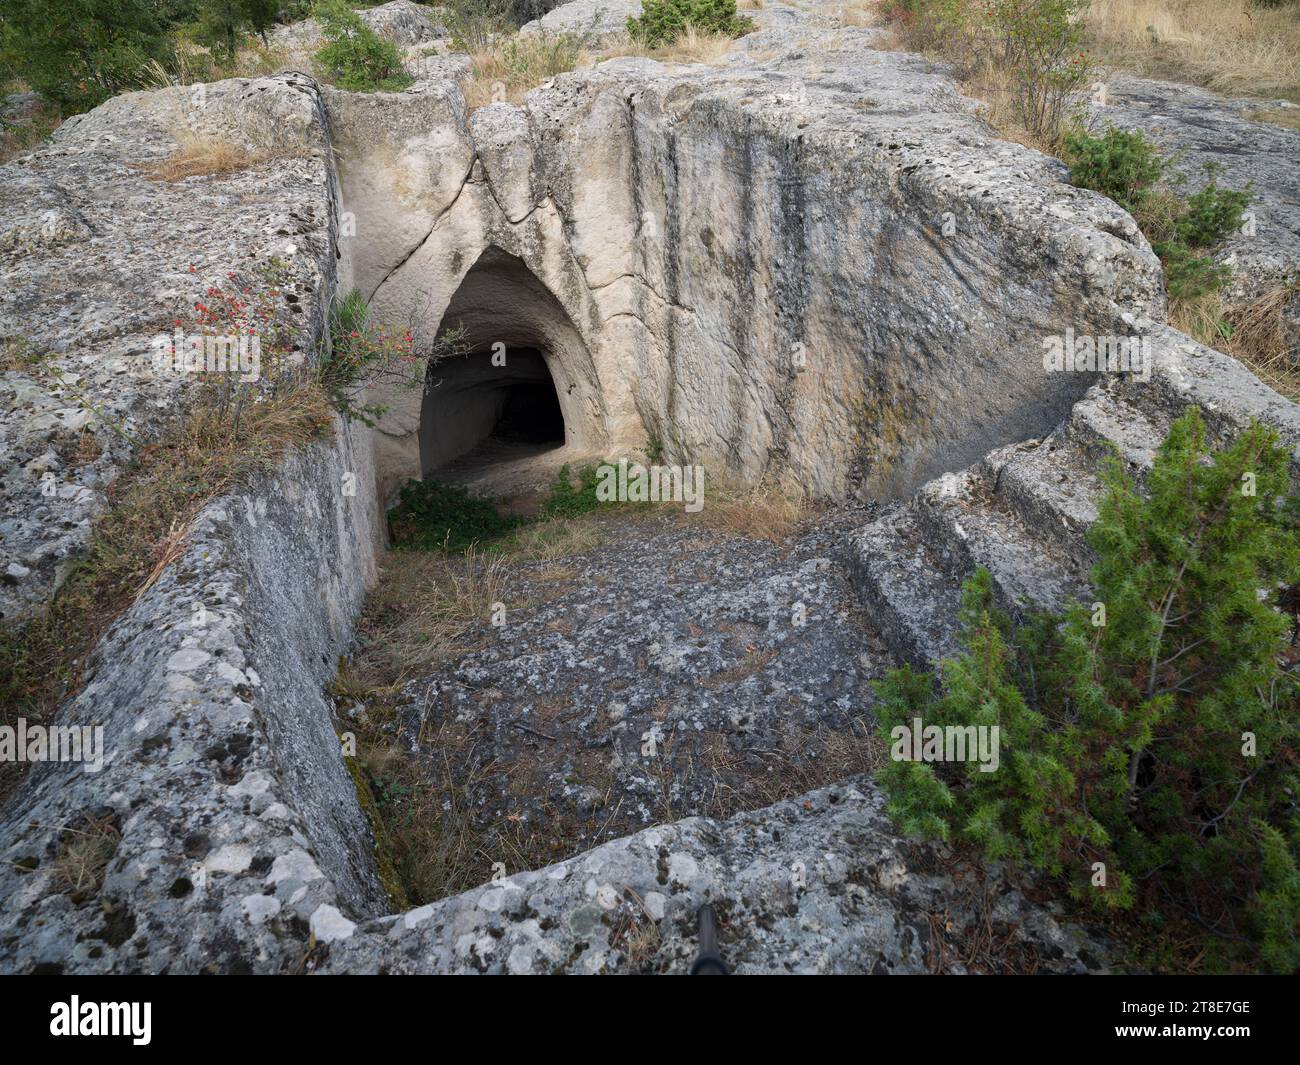 Cisternas de agua mitológicas. Monumento a Midas ( Yazılıkaya ) ciudad antigua. Valle frigiano. Patrimonio histórico de Turquía. Eskisehir, Turquía Foto de stock